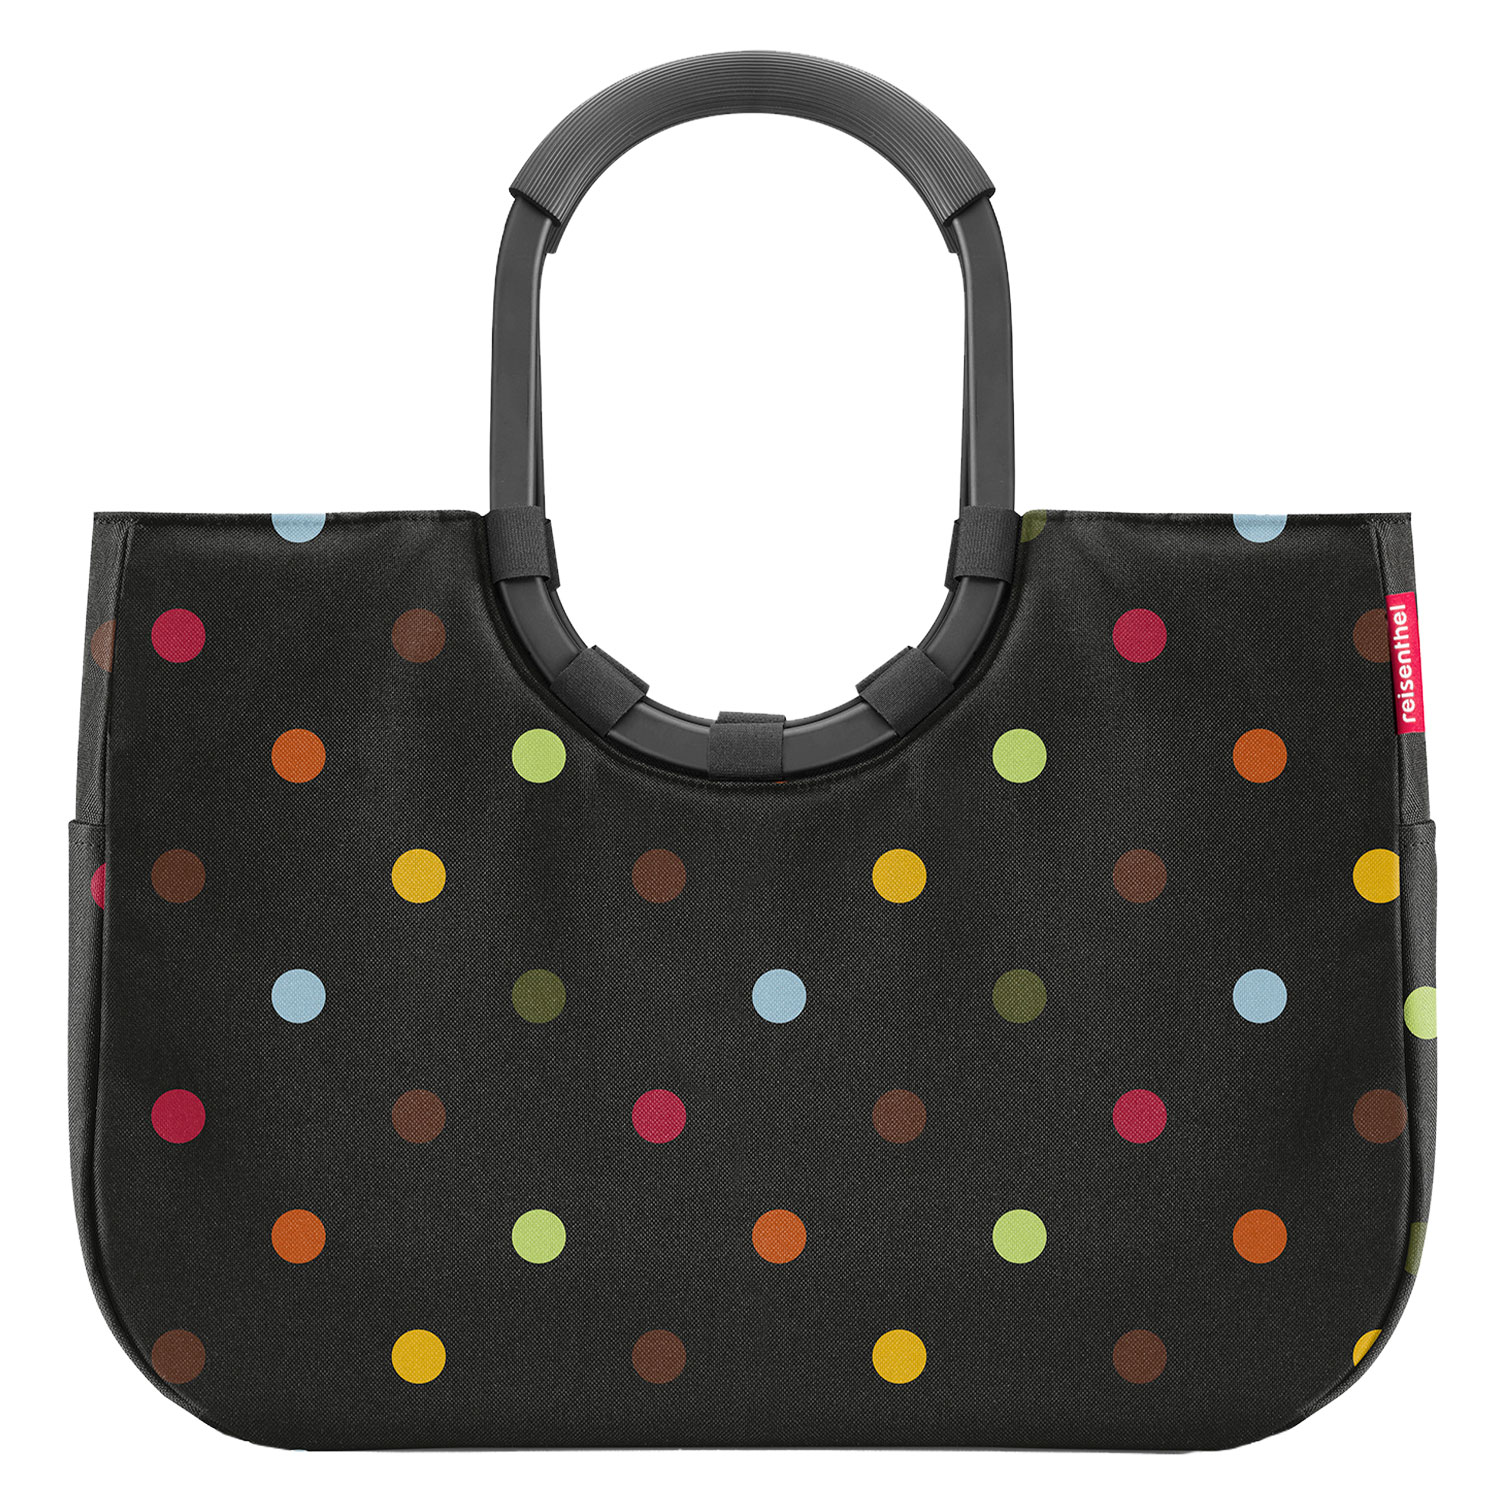 reisenthel Einkaufstasche loopshopper – schwarz mit bunten Punkten (schwarzer Rahmen – Größe L)